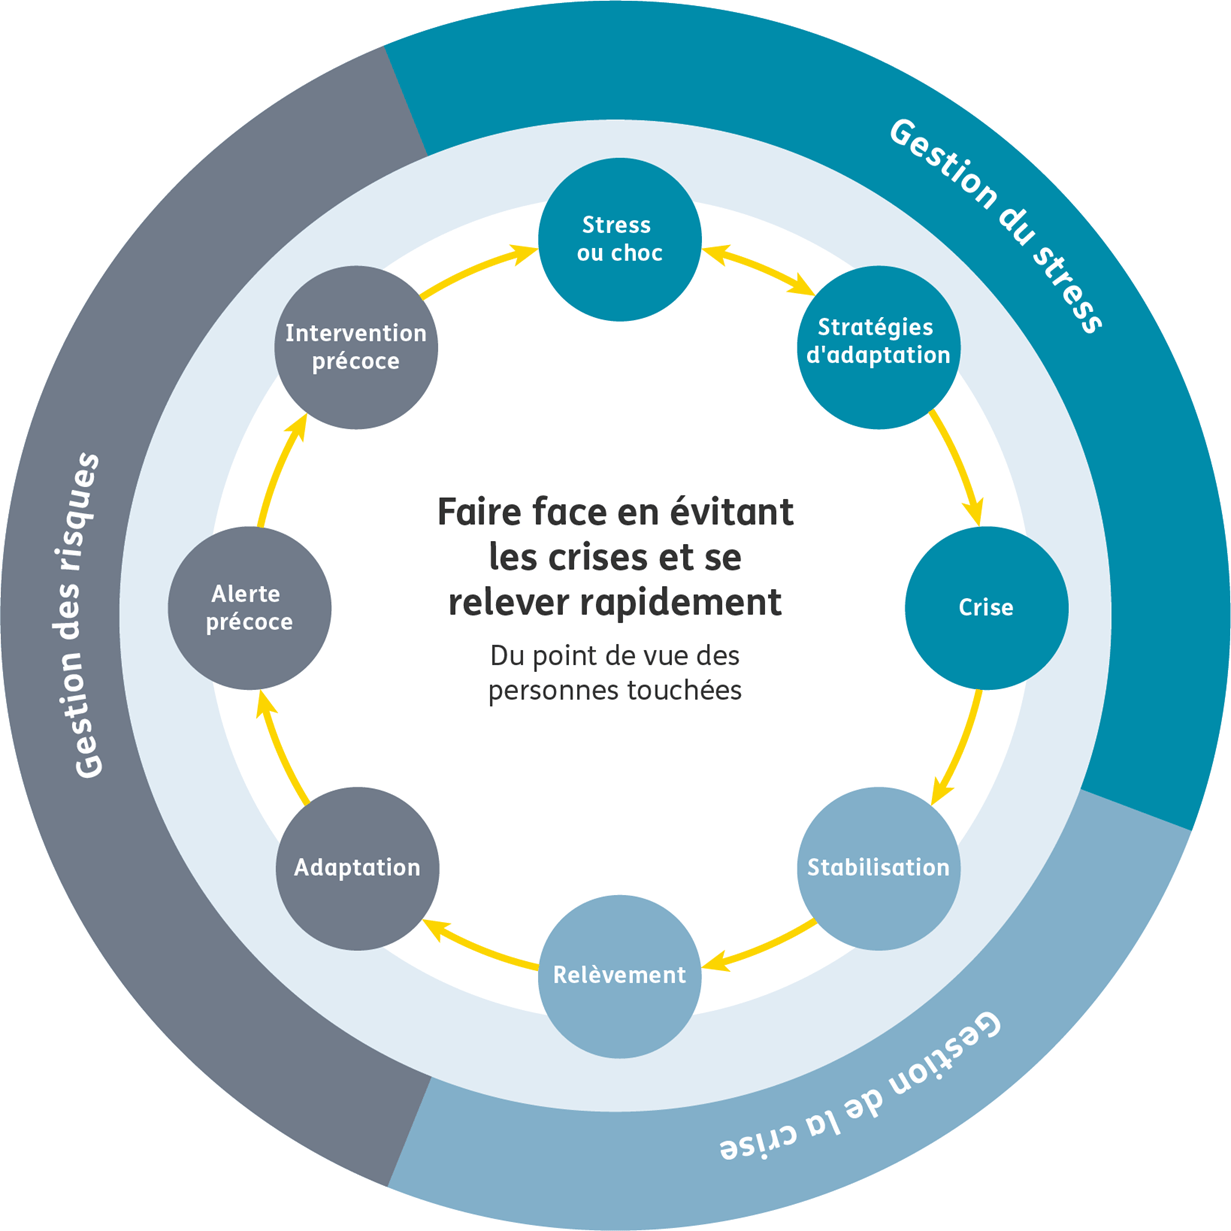 Un diagramme circulaire explique les huit étapes du cycle de réponse aux crises et aux catastrophes.